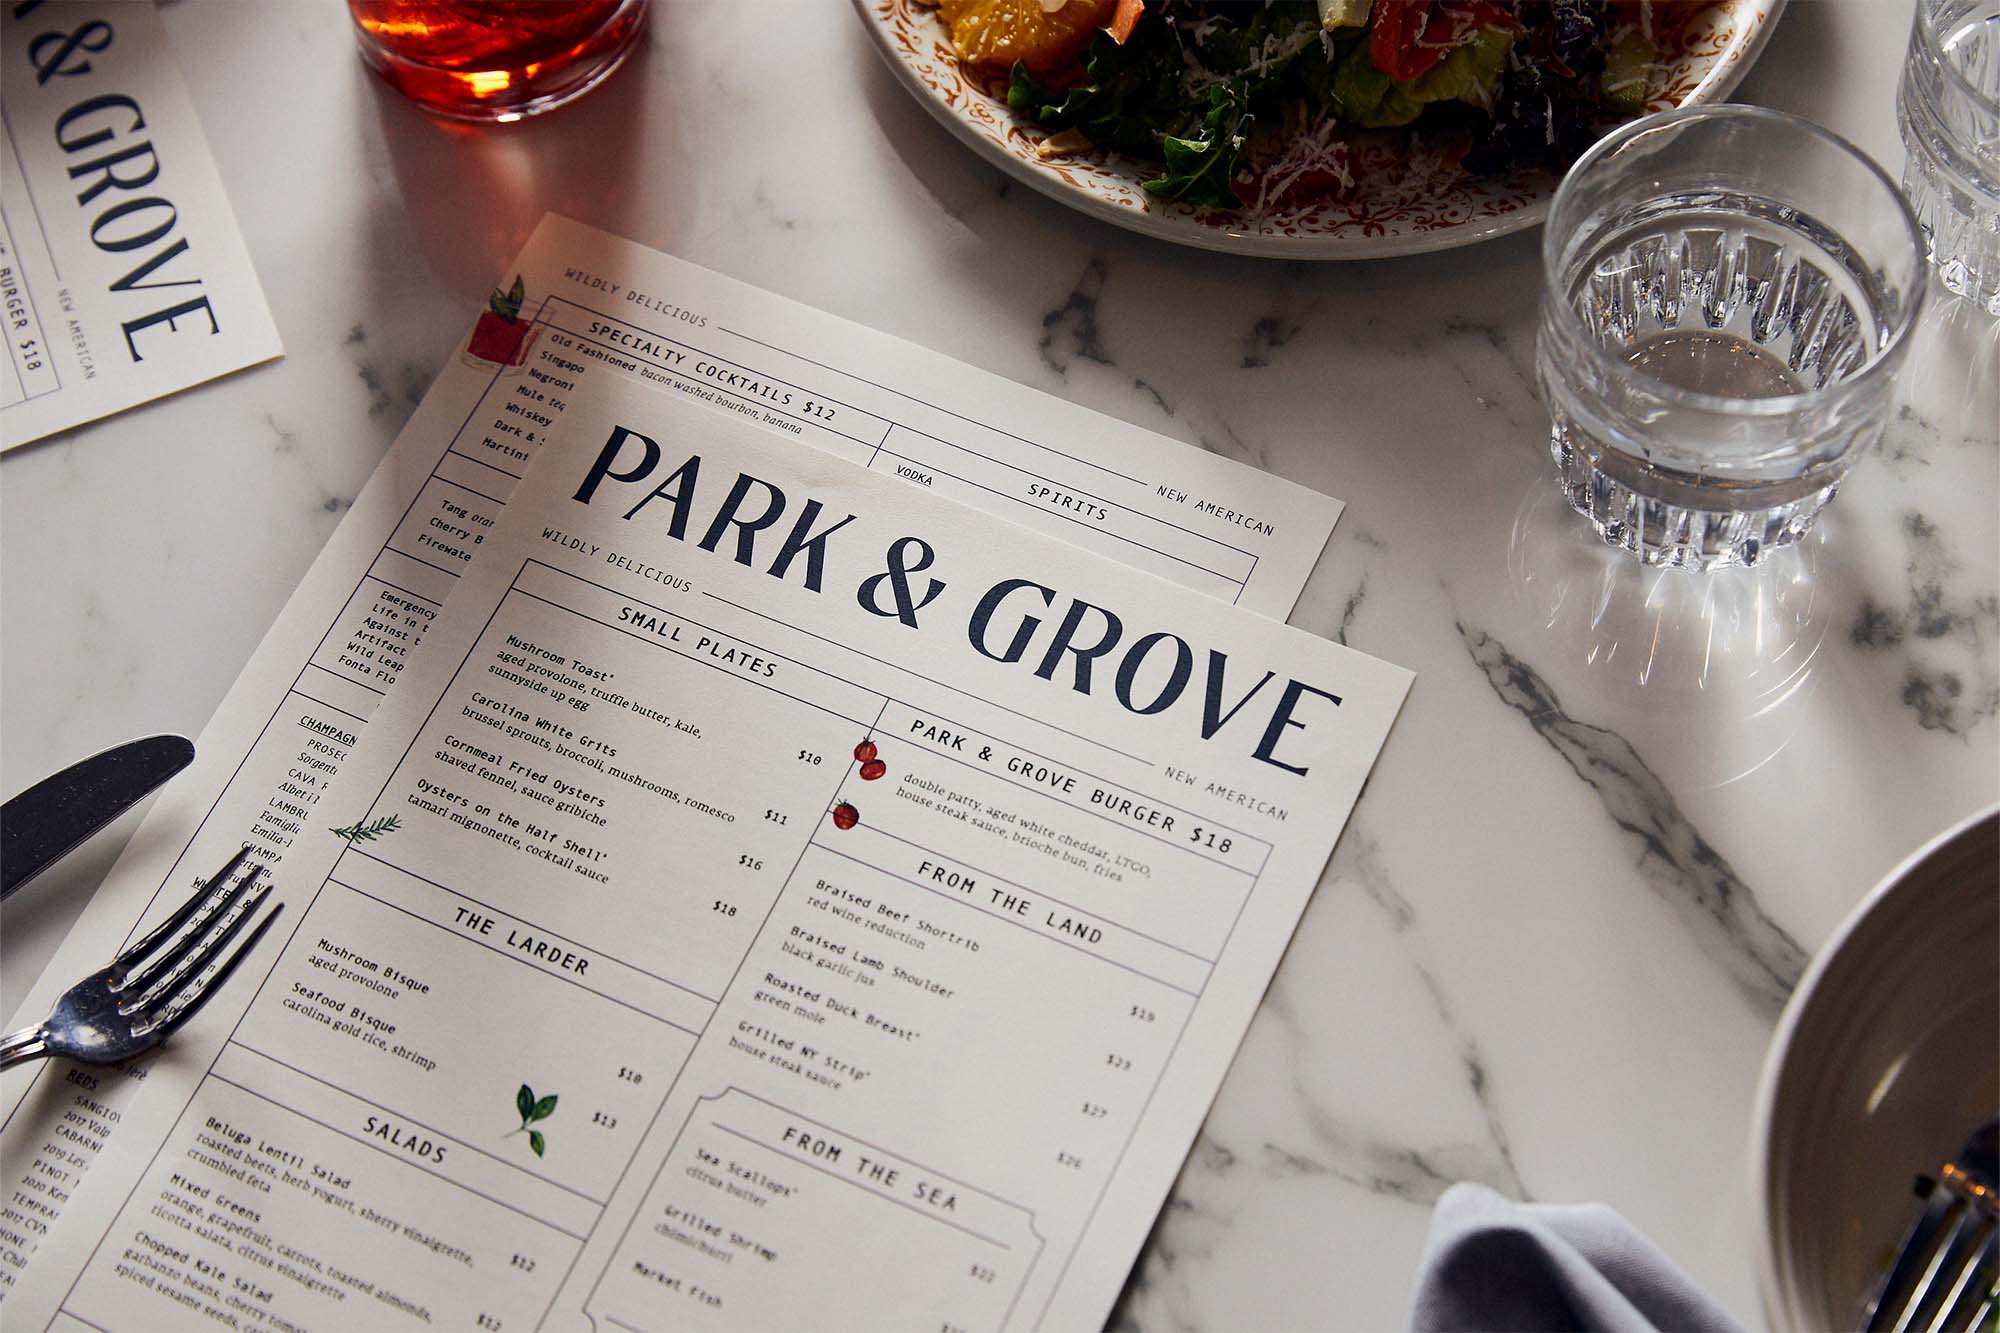 Park & Grove | SDCO Partners